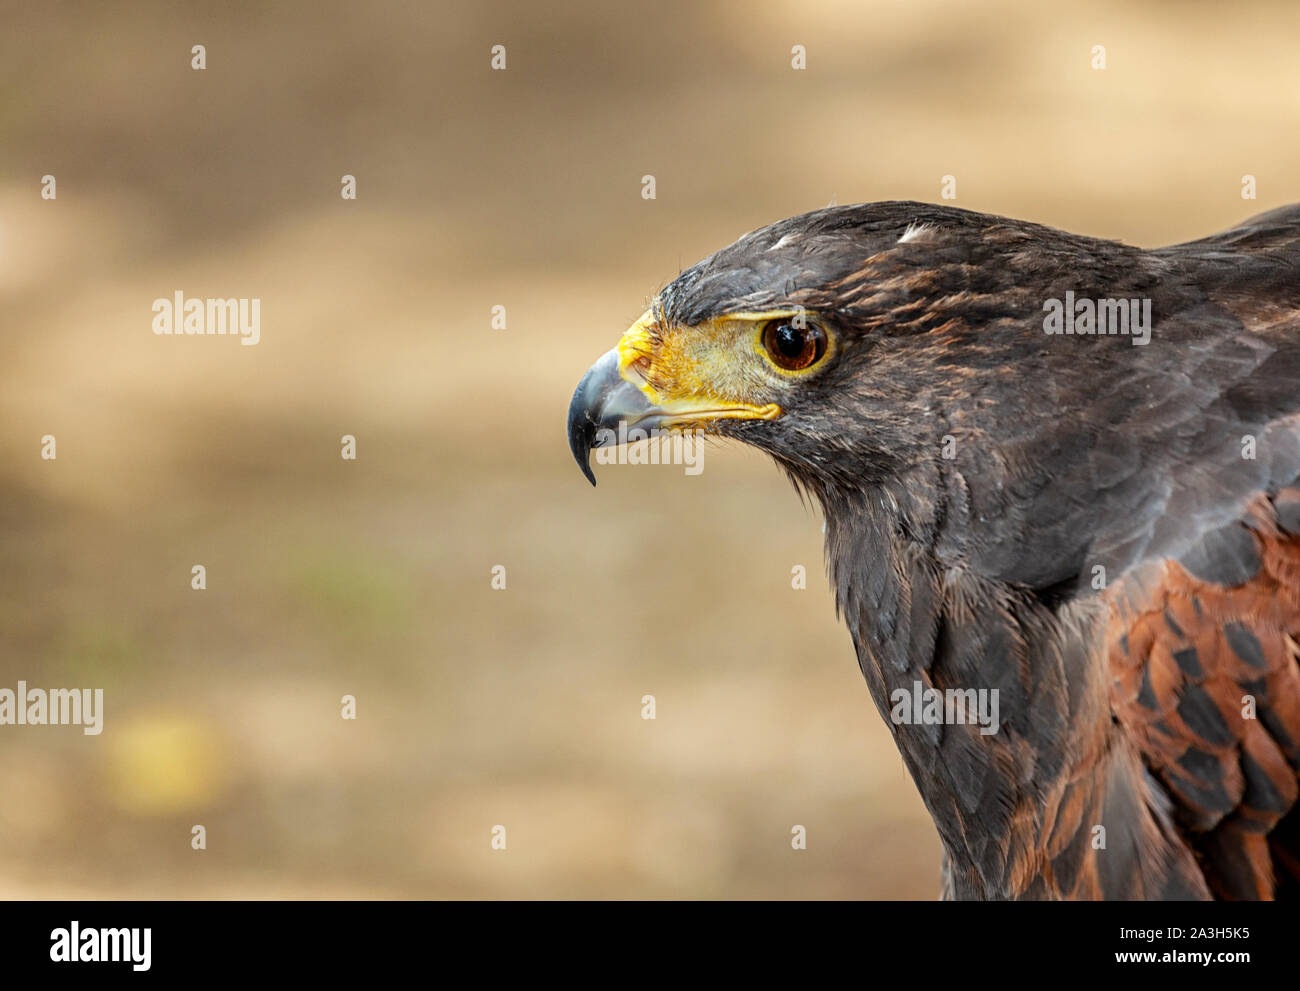 Hawk ritratto selettivo con soft focus, sullo sfondo della natura. Foto Stock